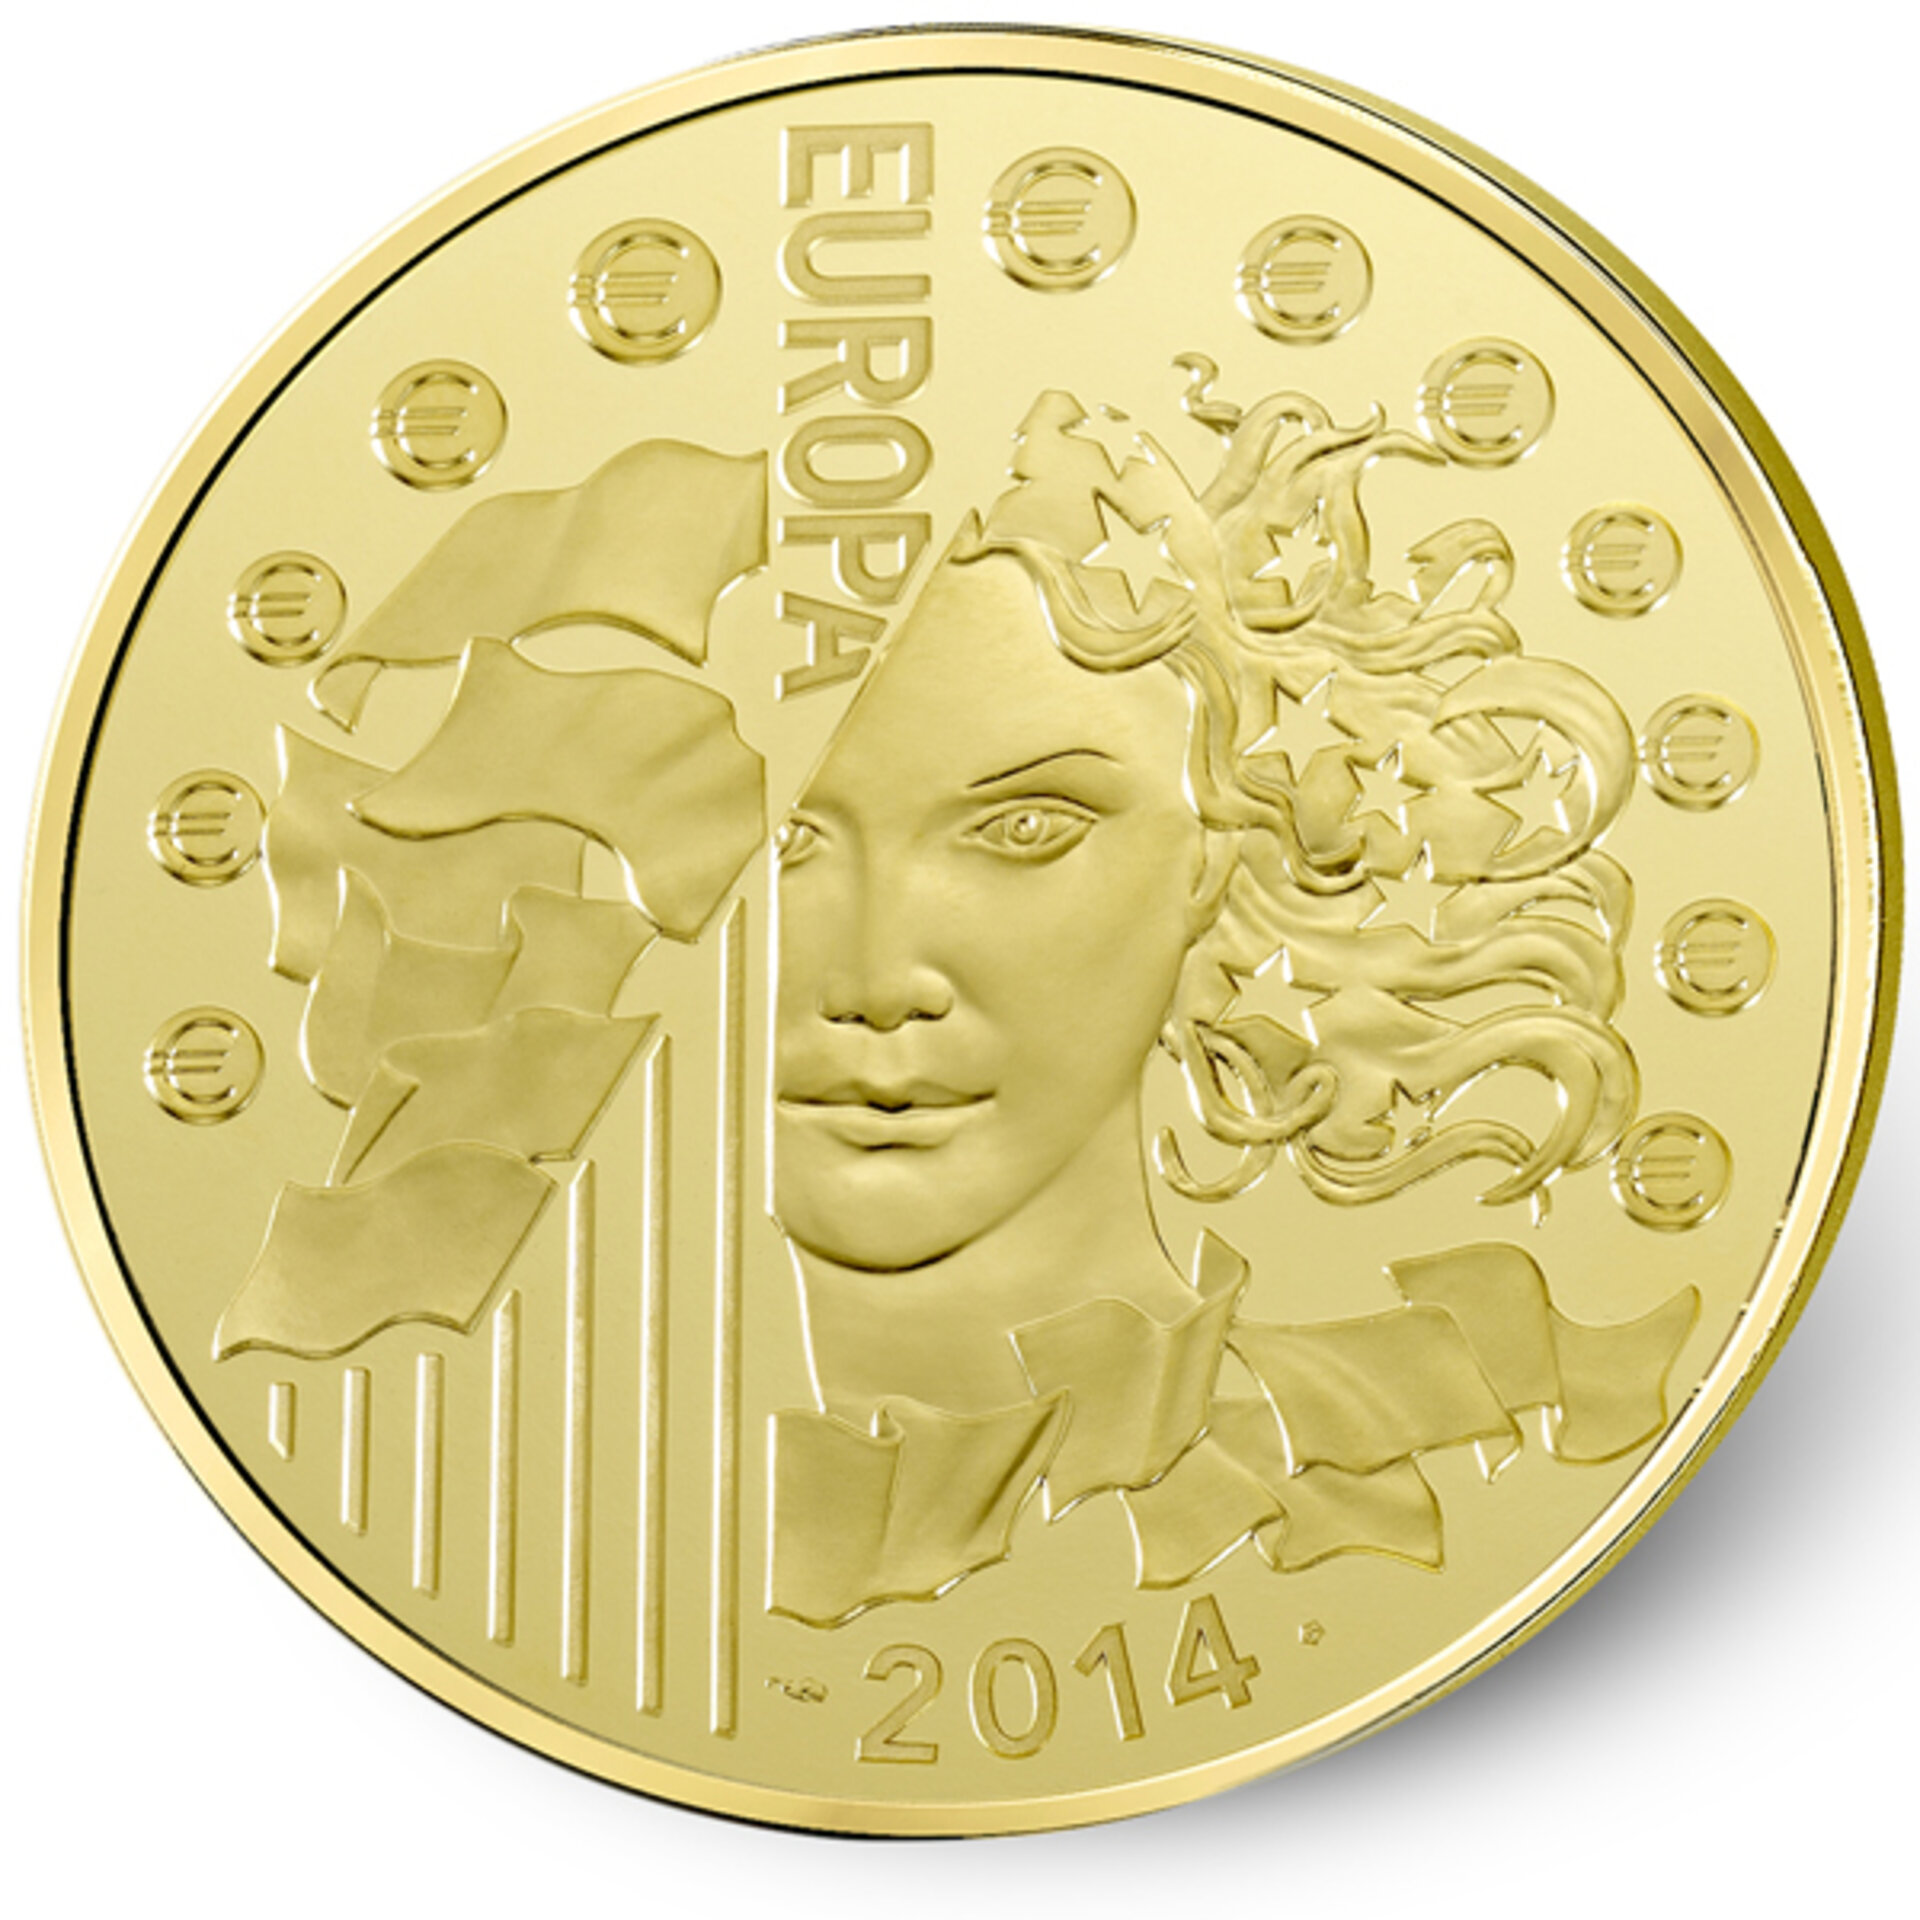 Commemorative coin reverse